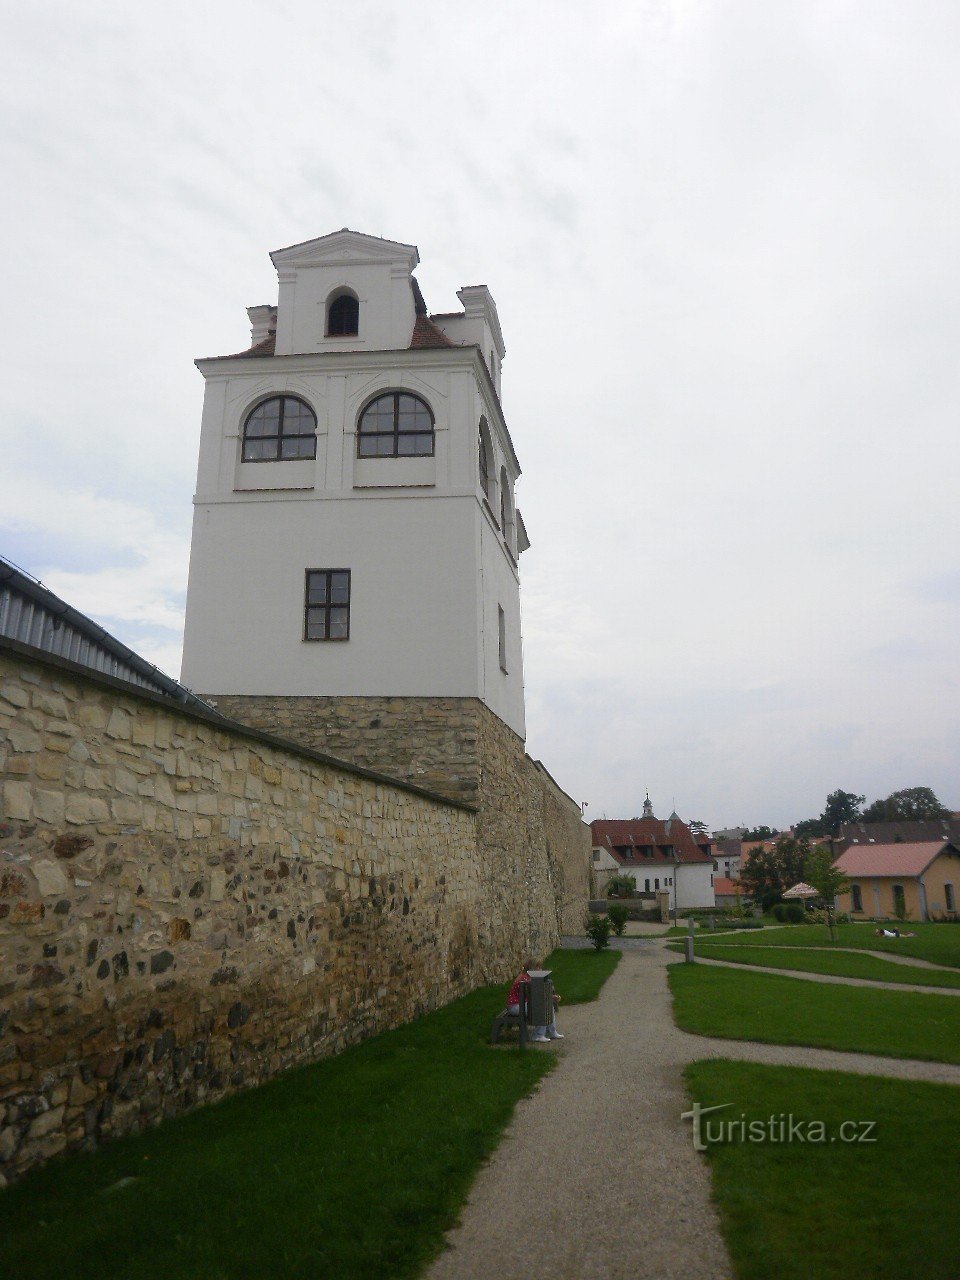 Litoměřice is een stad aan de samenvloeiing van de Elbe en Ohře